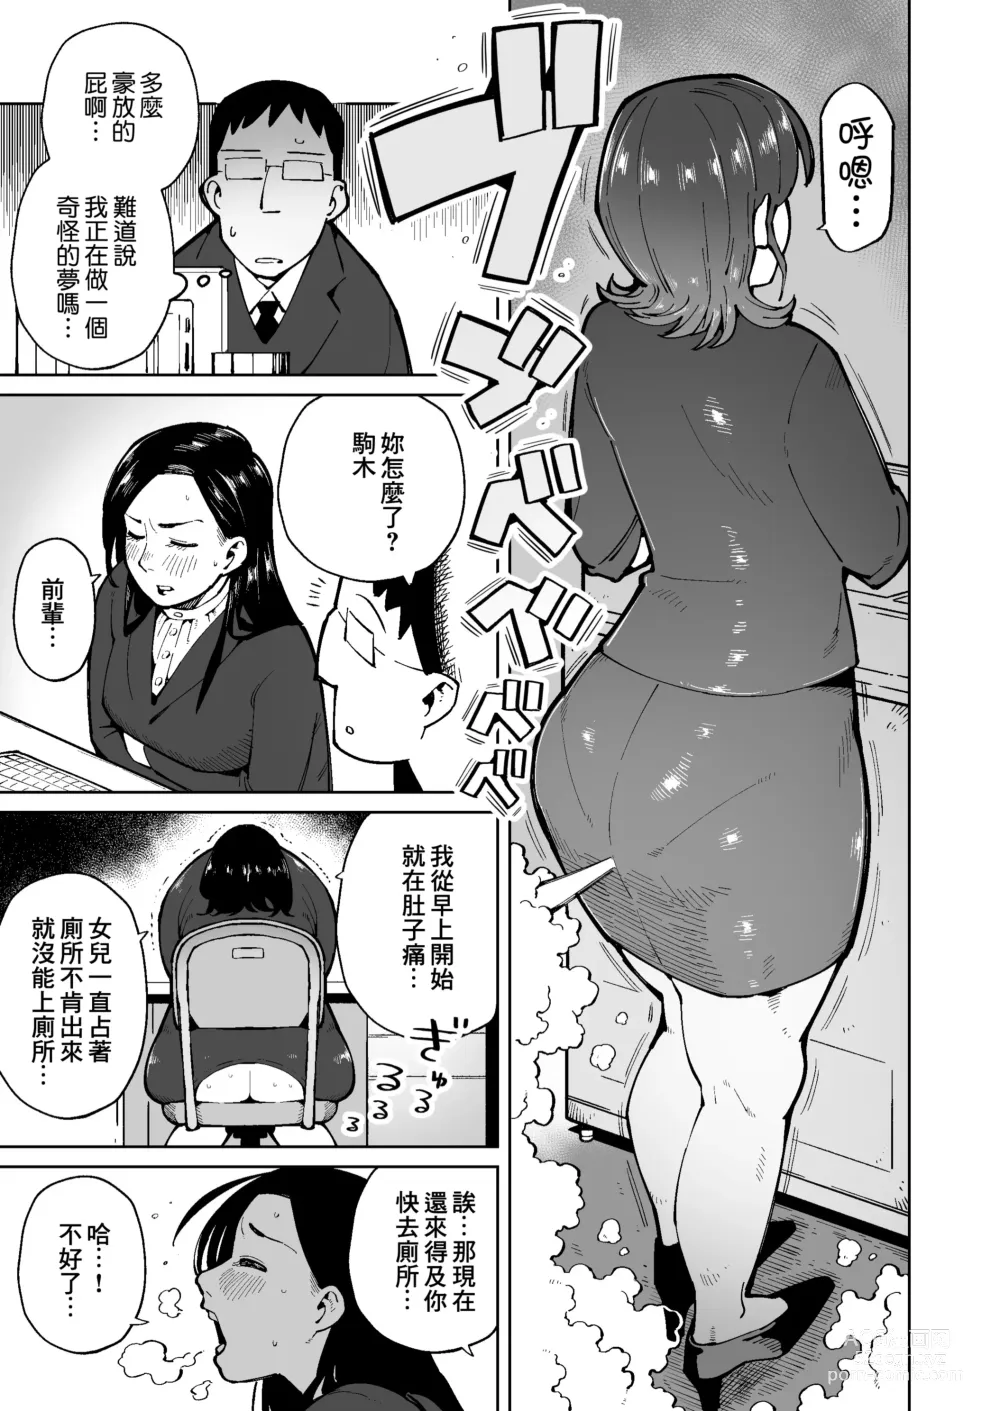 Page 6 of doujinshi 早上一起床發現變成了隨地大便的世界那檔事